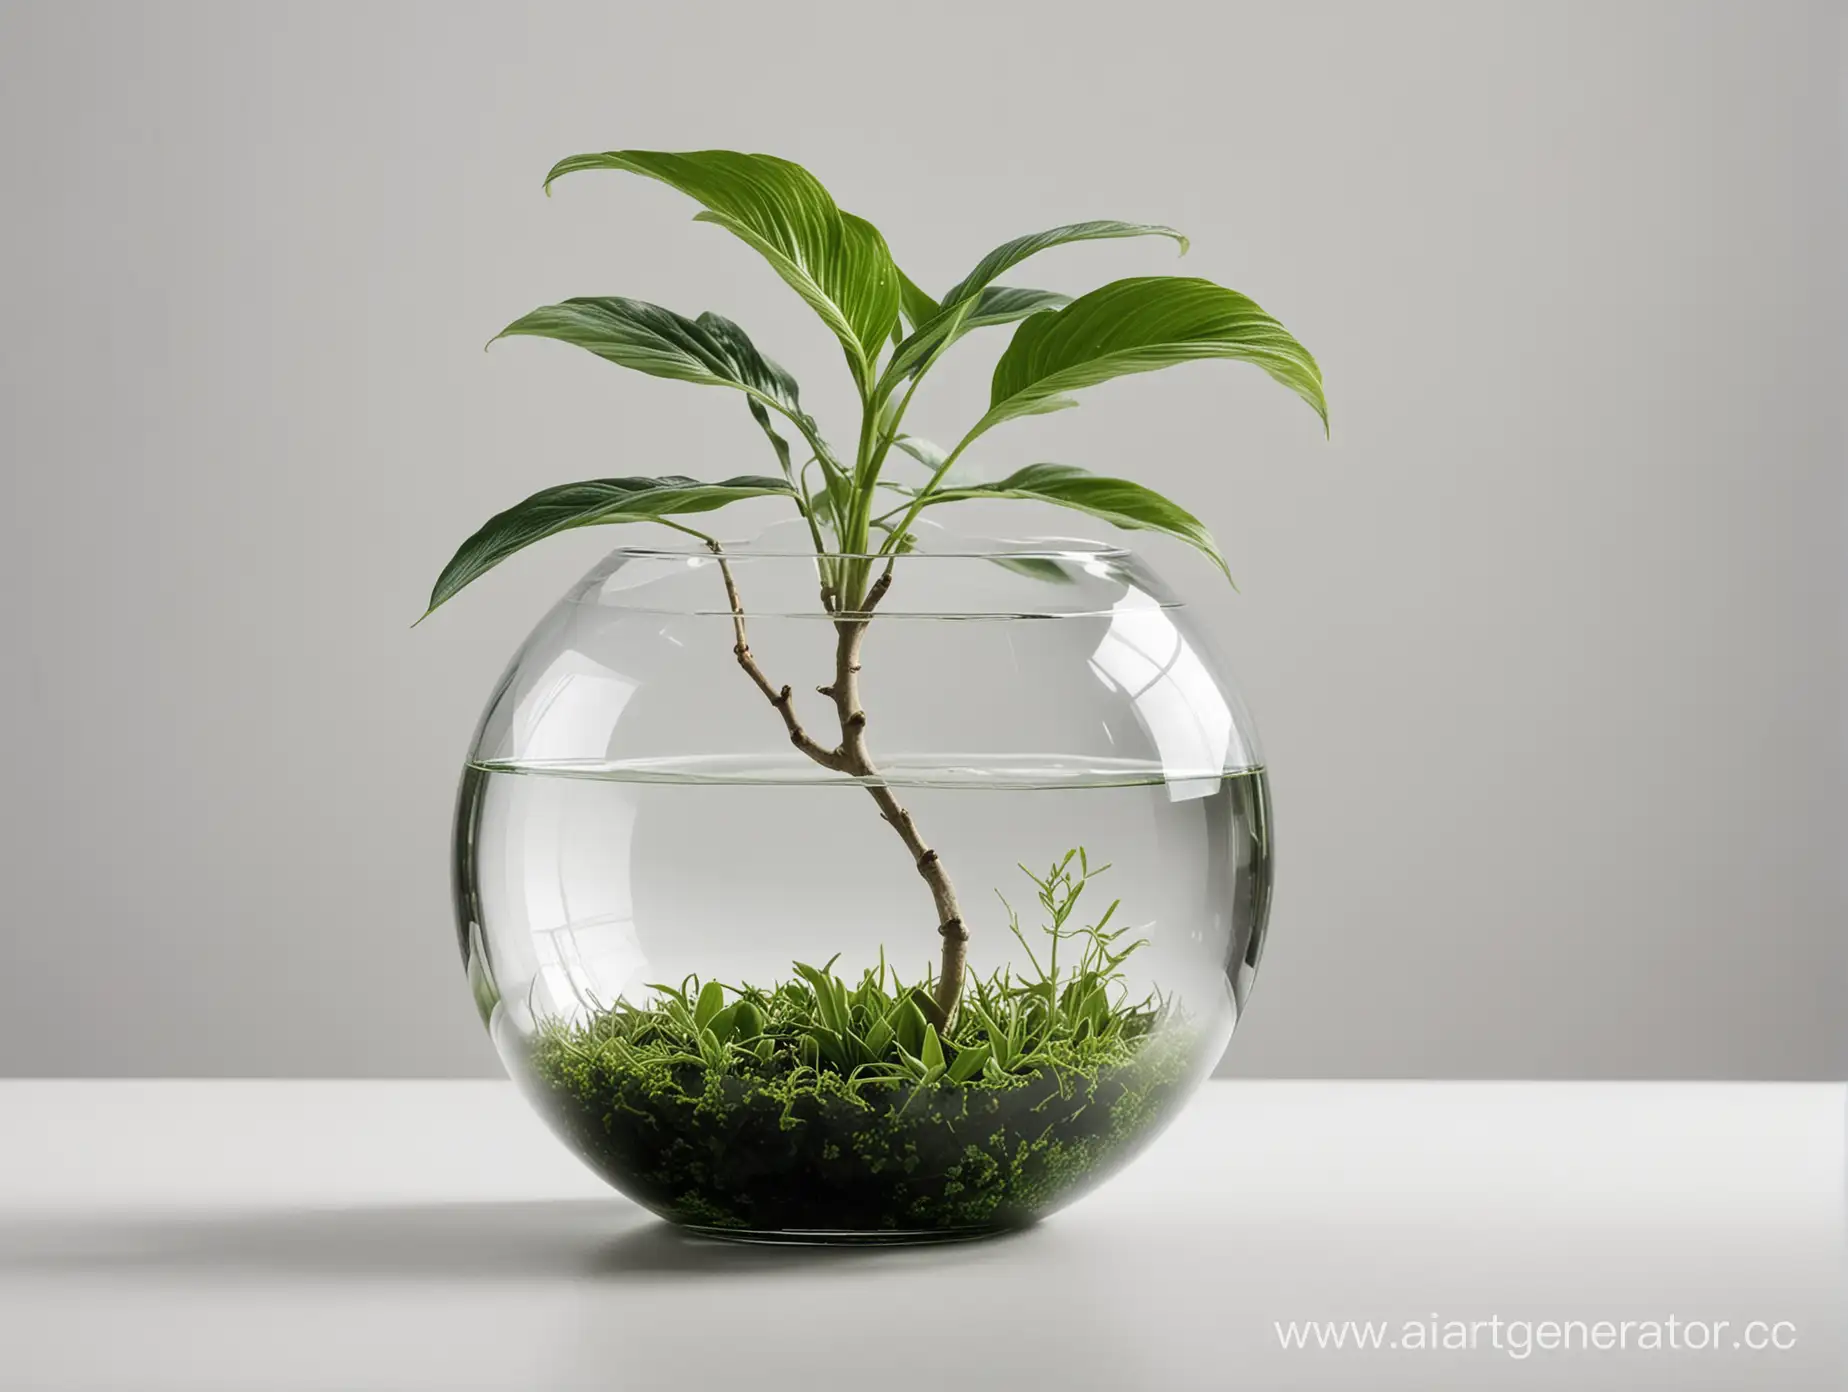 создай фотографию  хорошего качества на которой изображена прозрачная круглая ваза в виде шара и из которой растет зеленое красивое растение